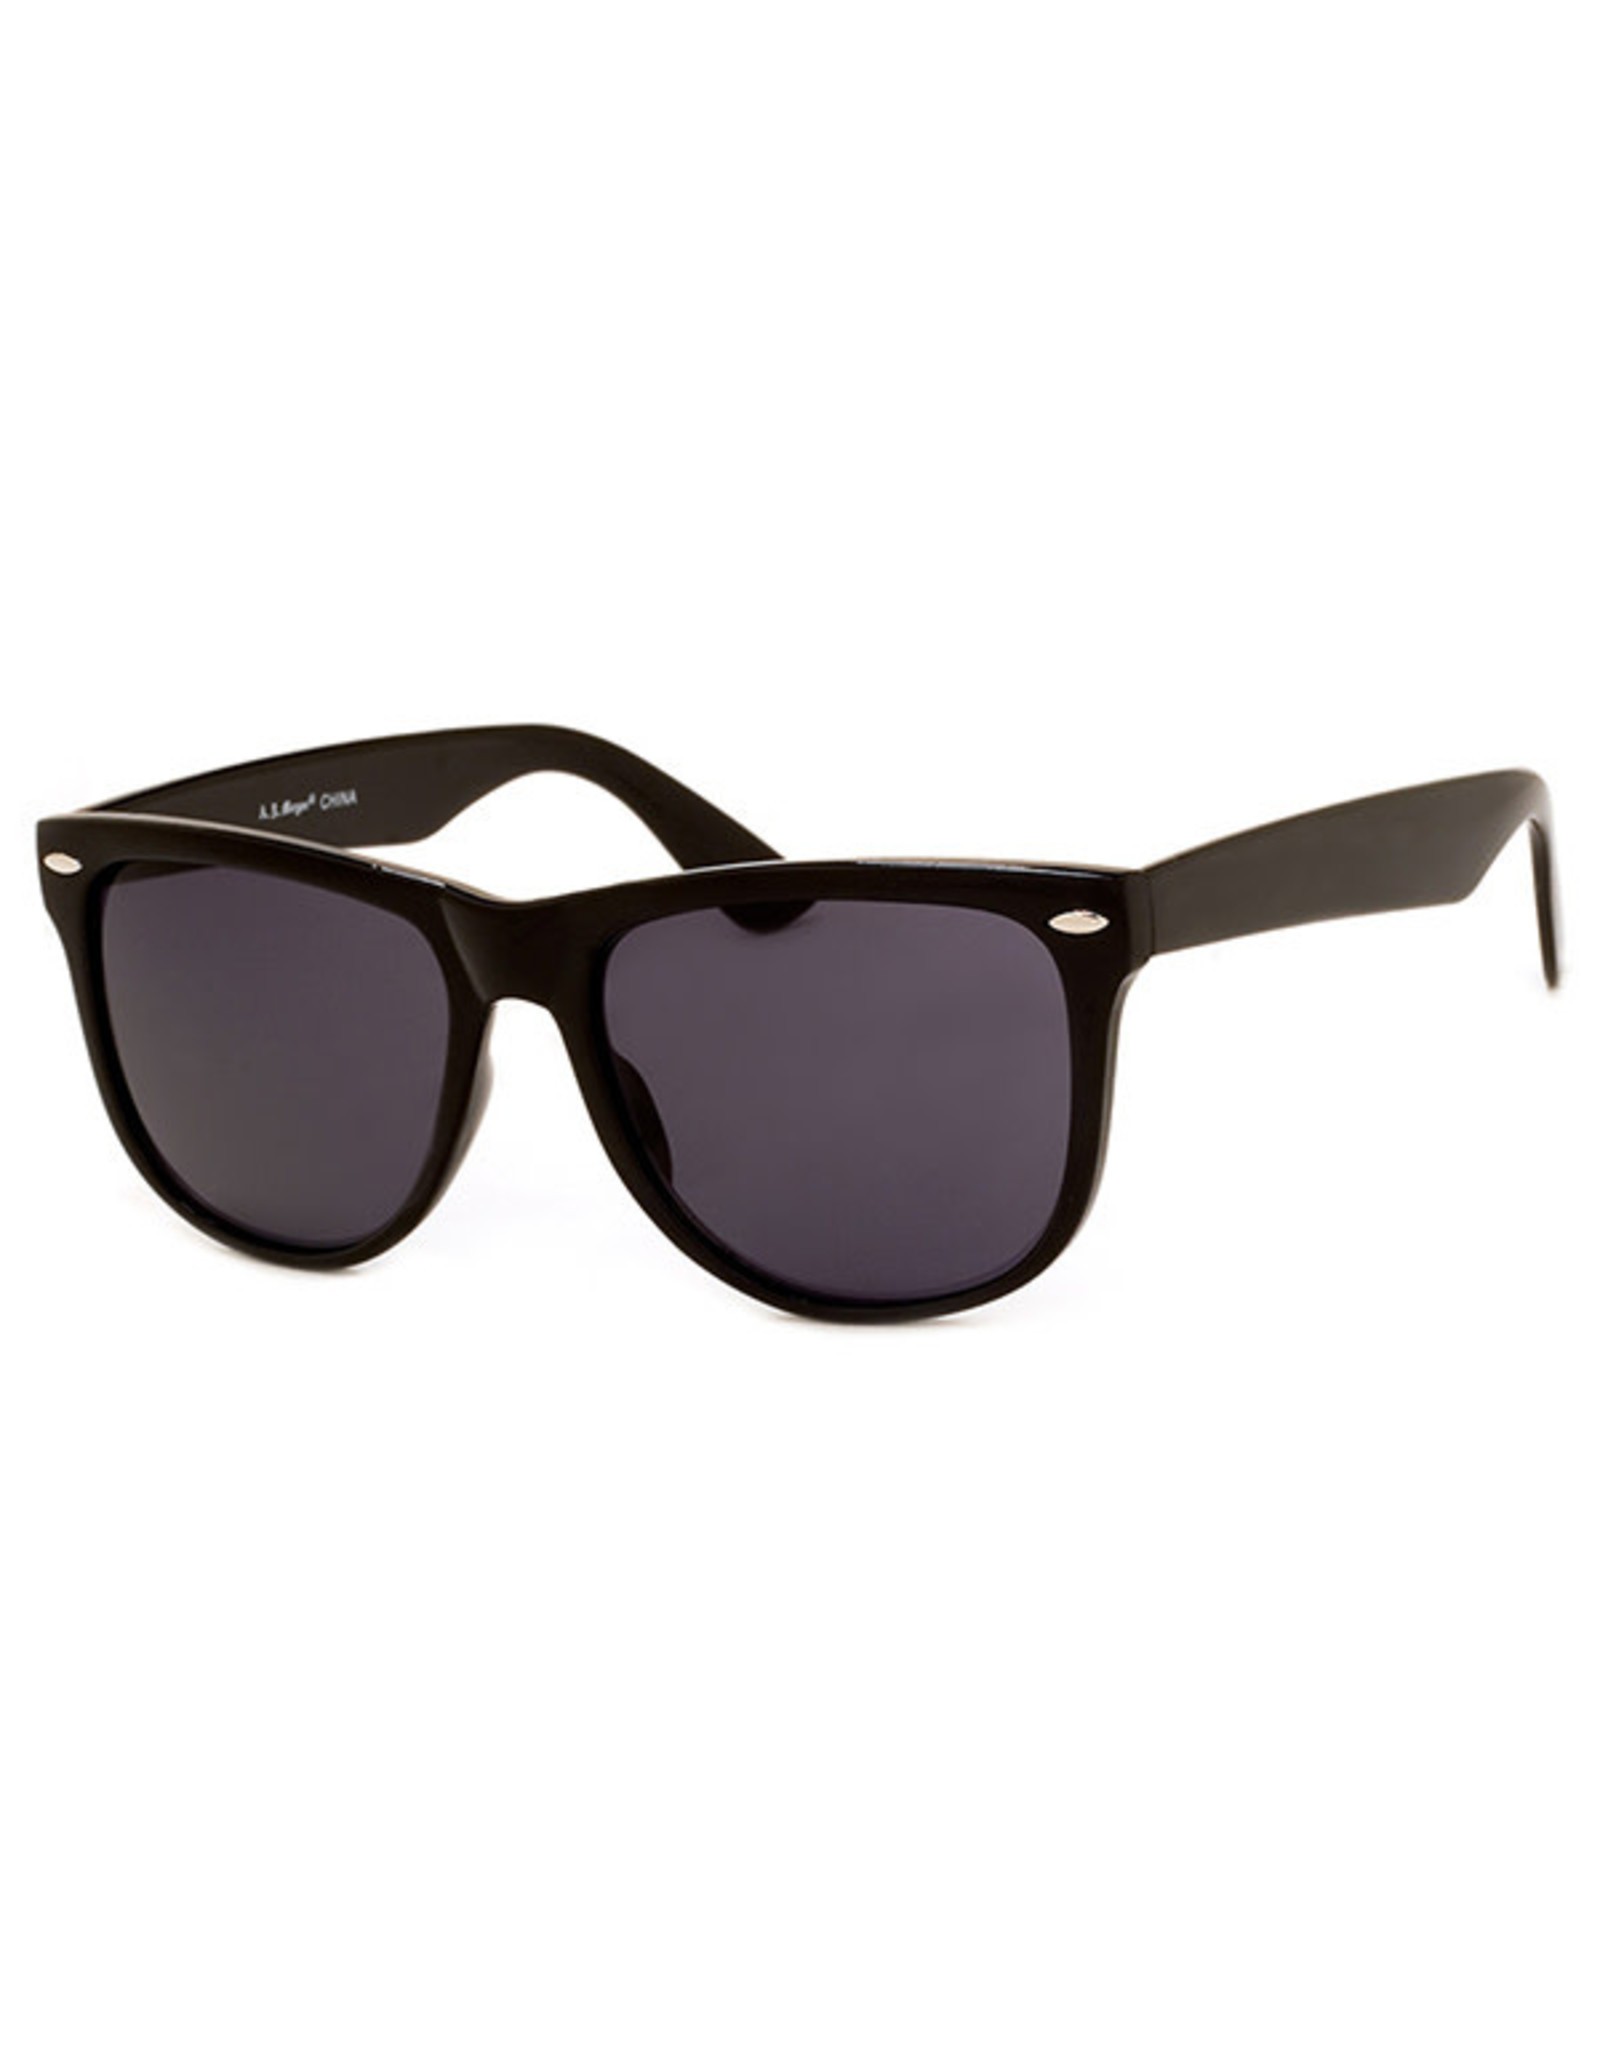 AJM - Wayfarer Frame Sunglasses / Black or Tortoiseshell